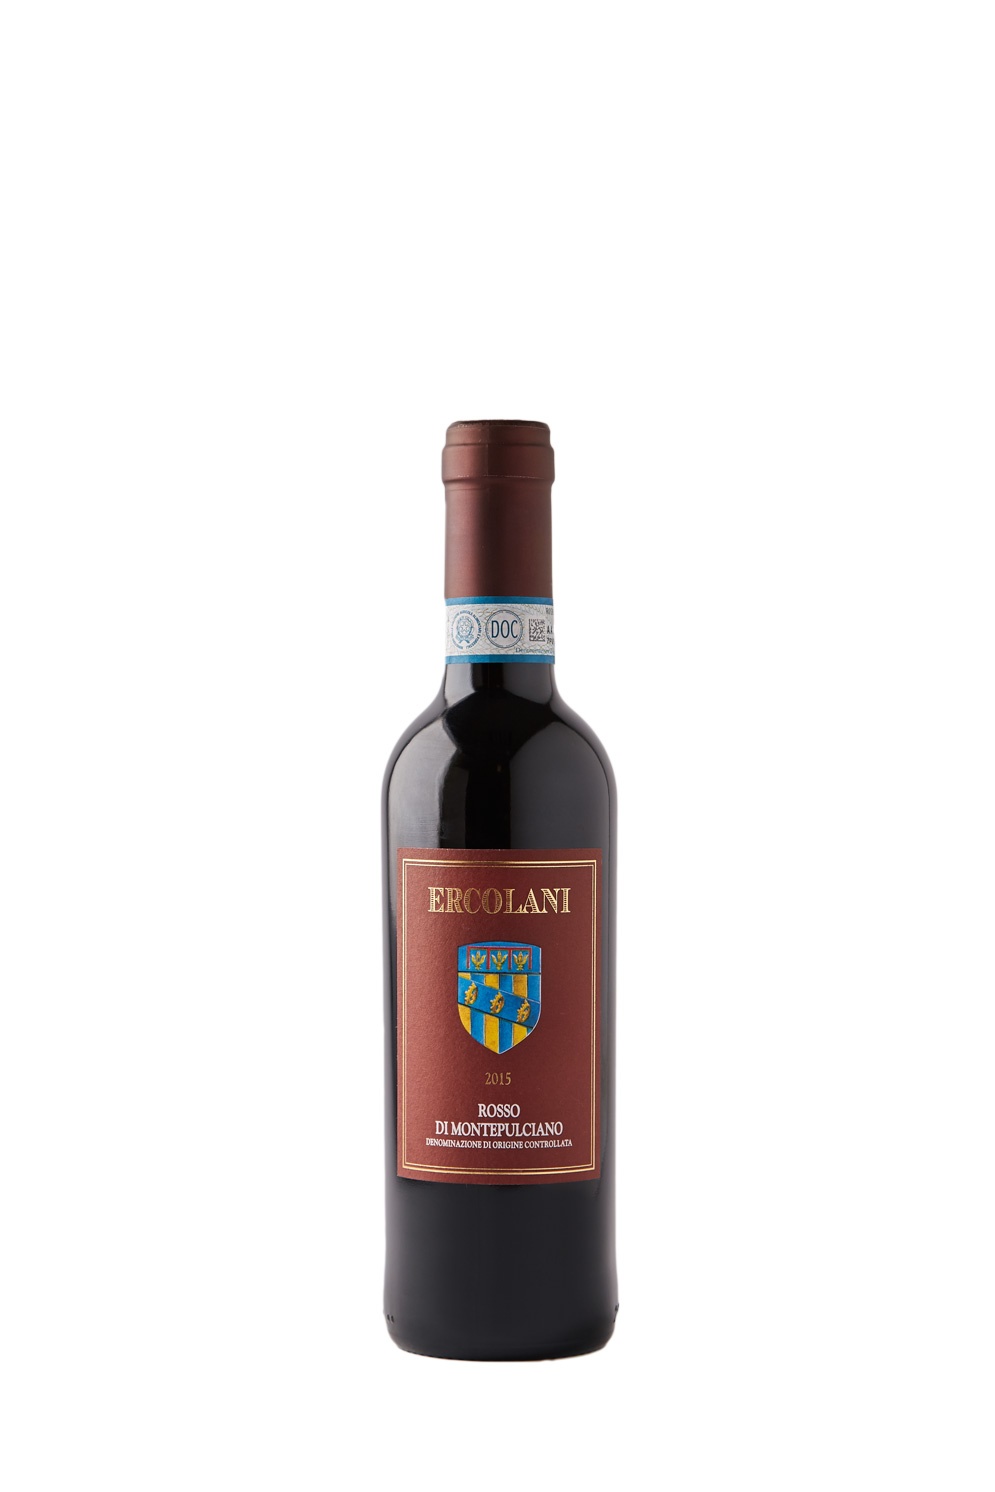 Vino rosso di Montepulciano d.o.c. Ercolani 2015